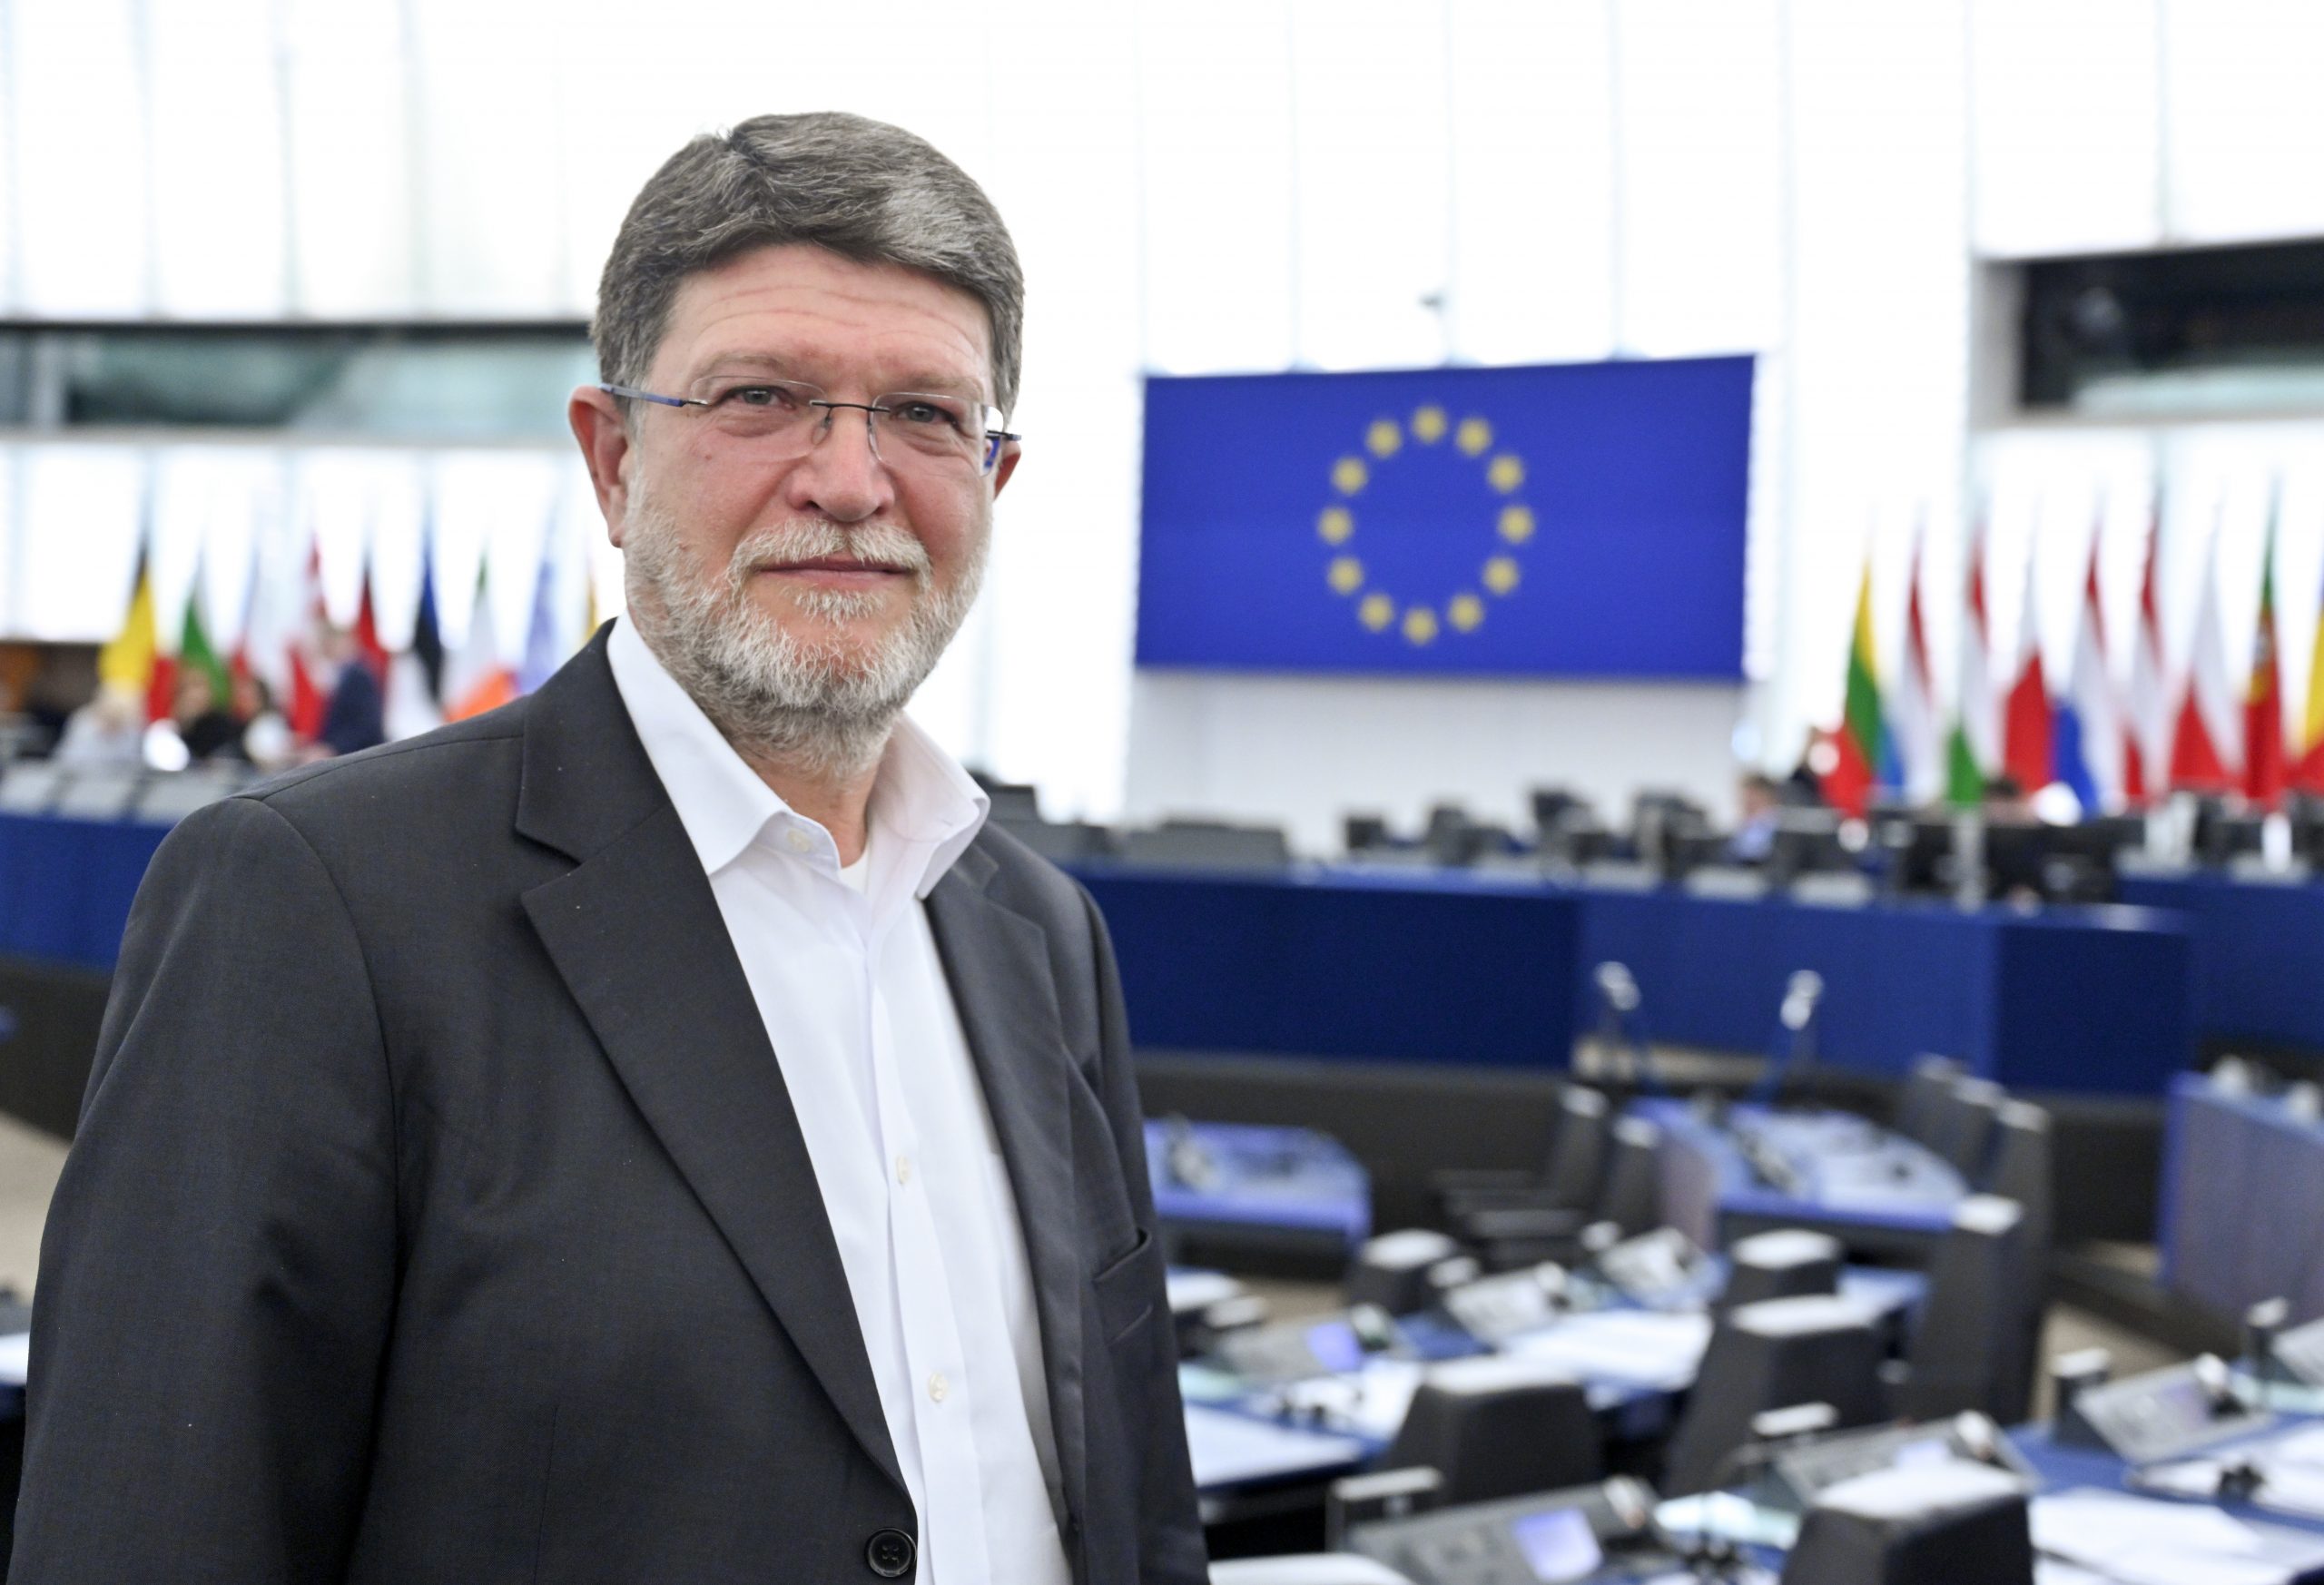 Tonino PICULA in the EP in Strasbourg